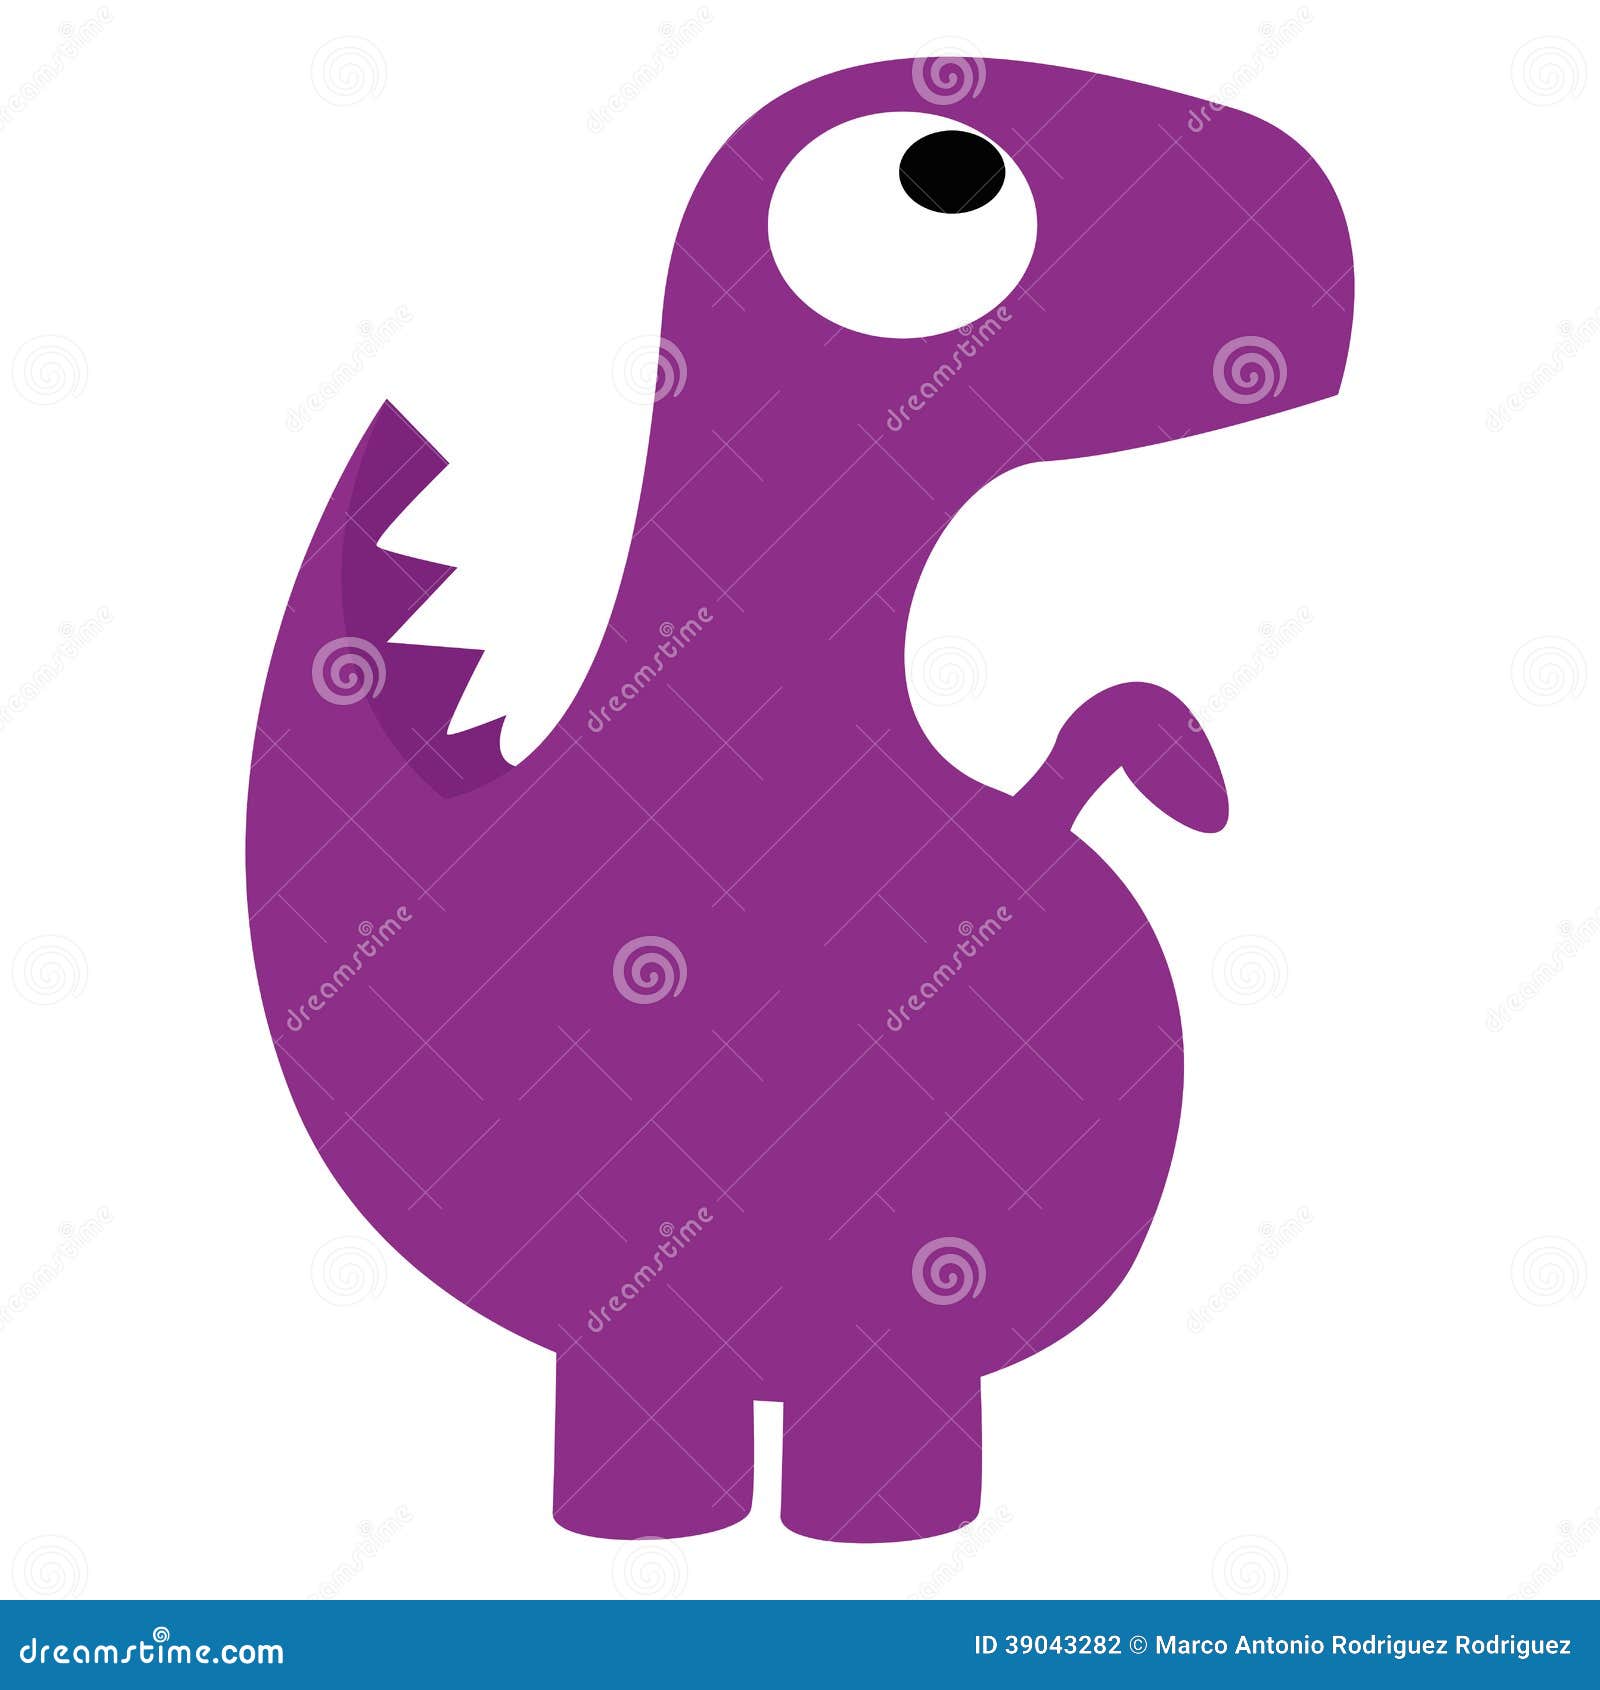 Ilustração de dinossauro roxo estilo aquarela, Vetor Premium